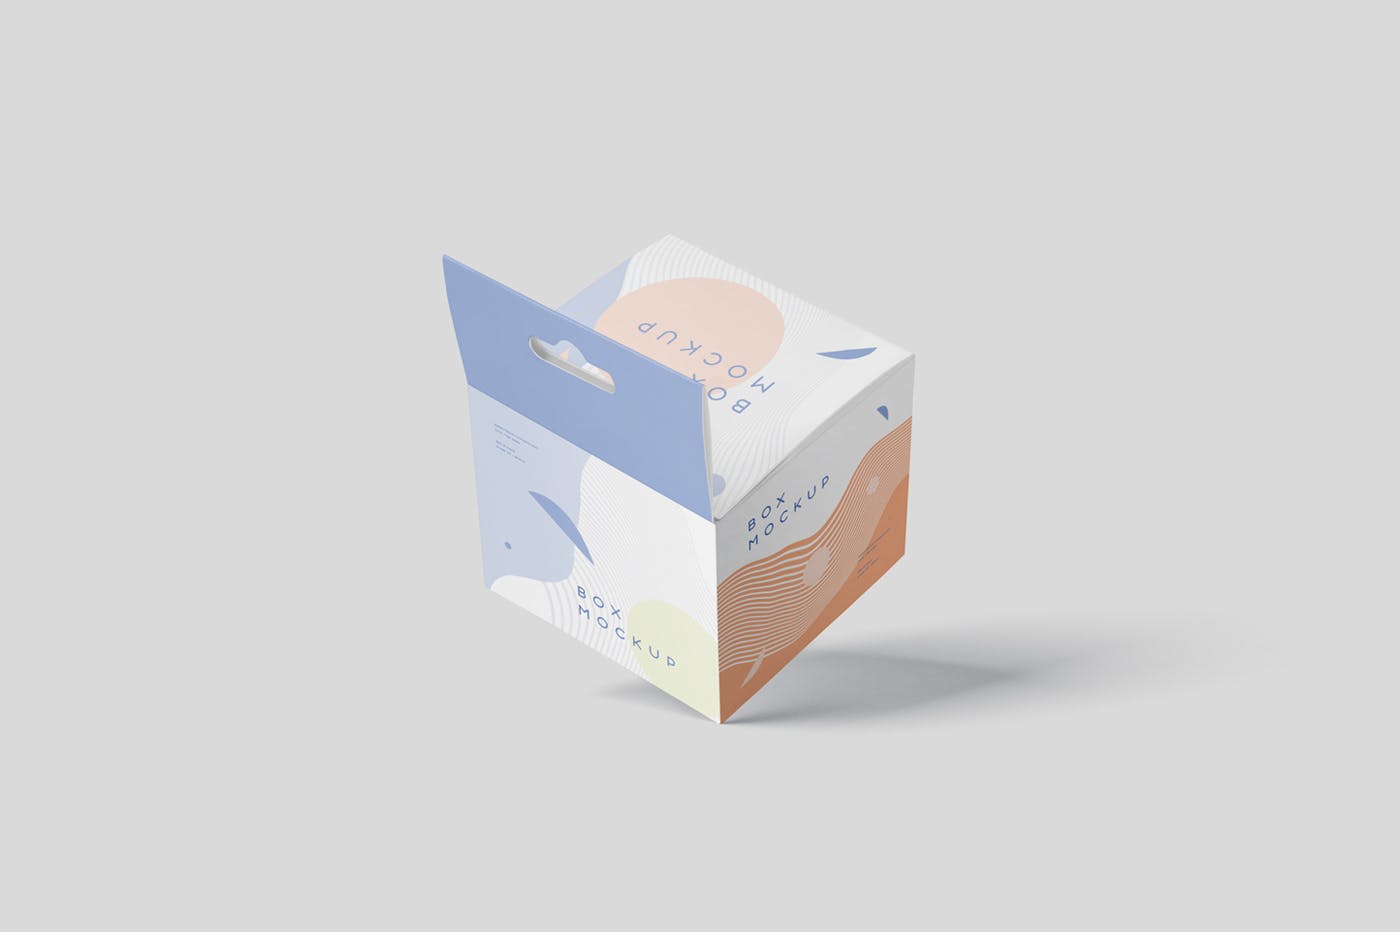 挂耳式迷你方形包装盒素材中国精选模板 Box Mockup Set – Mini Square with Hanger插图(5)